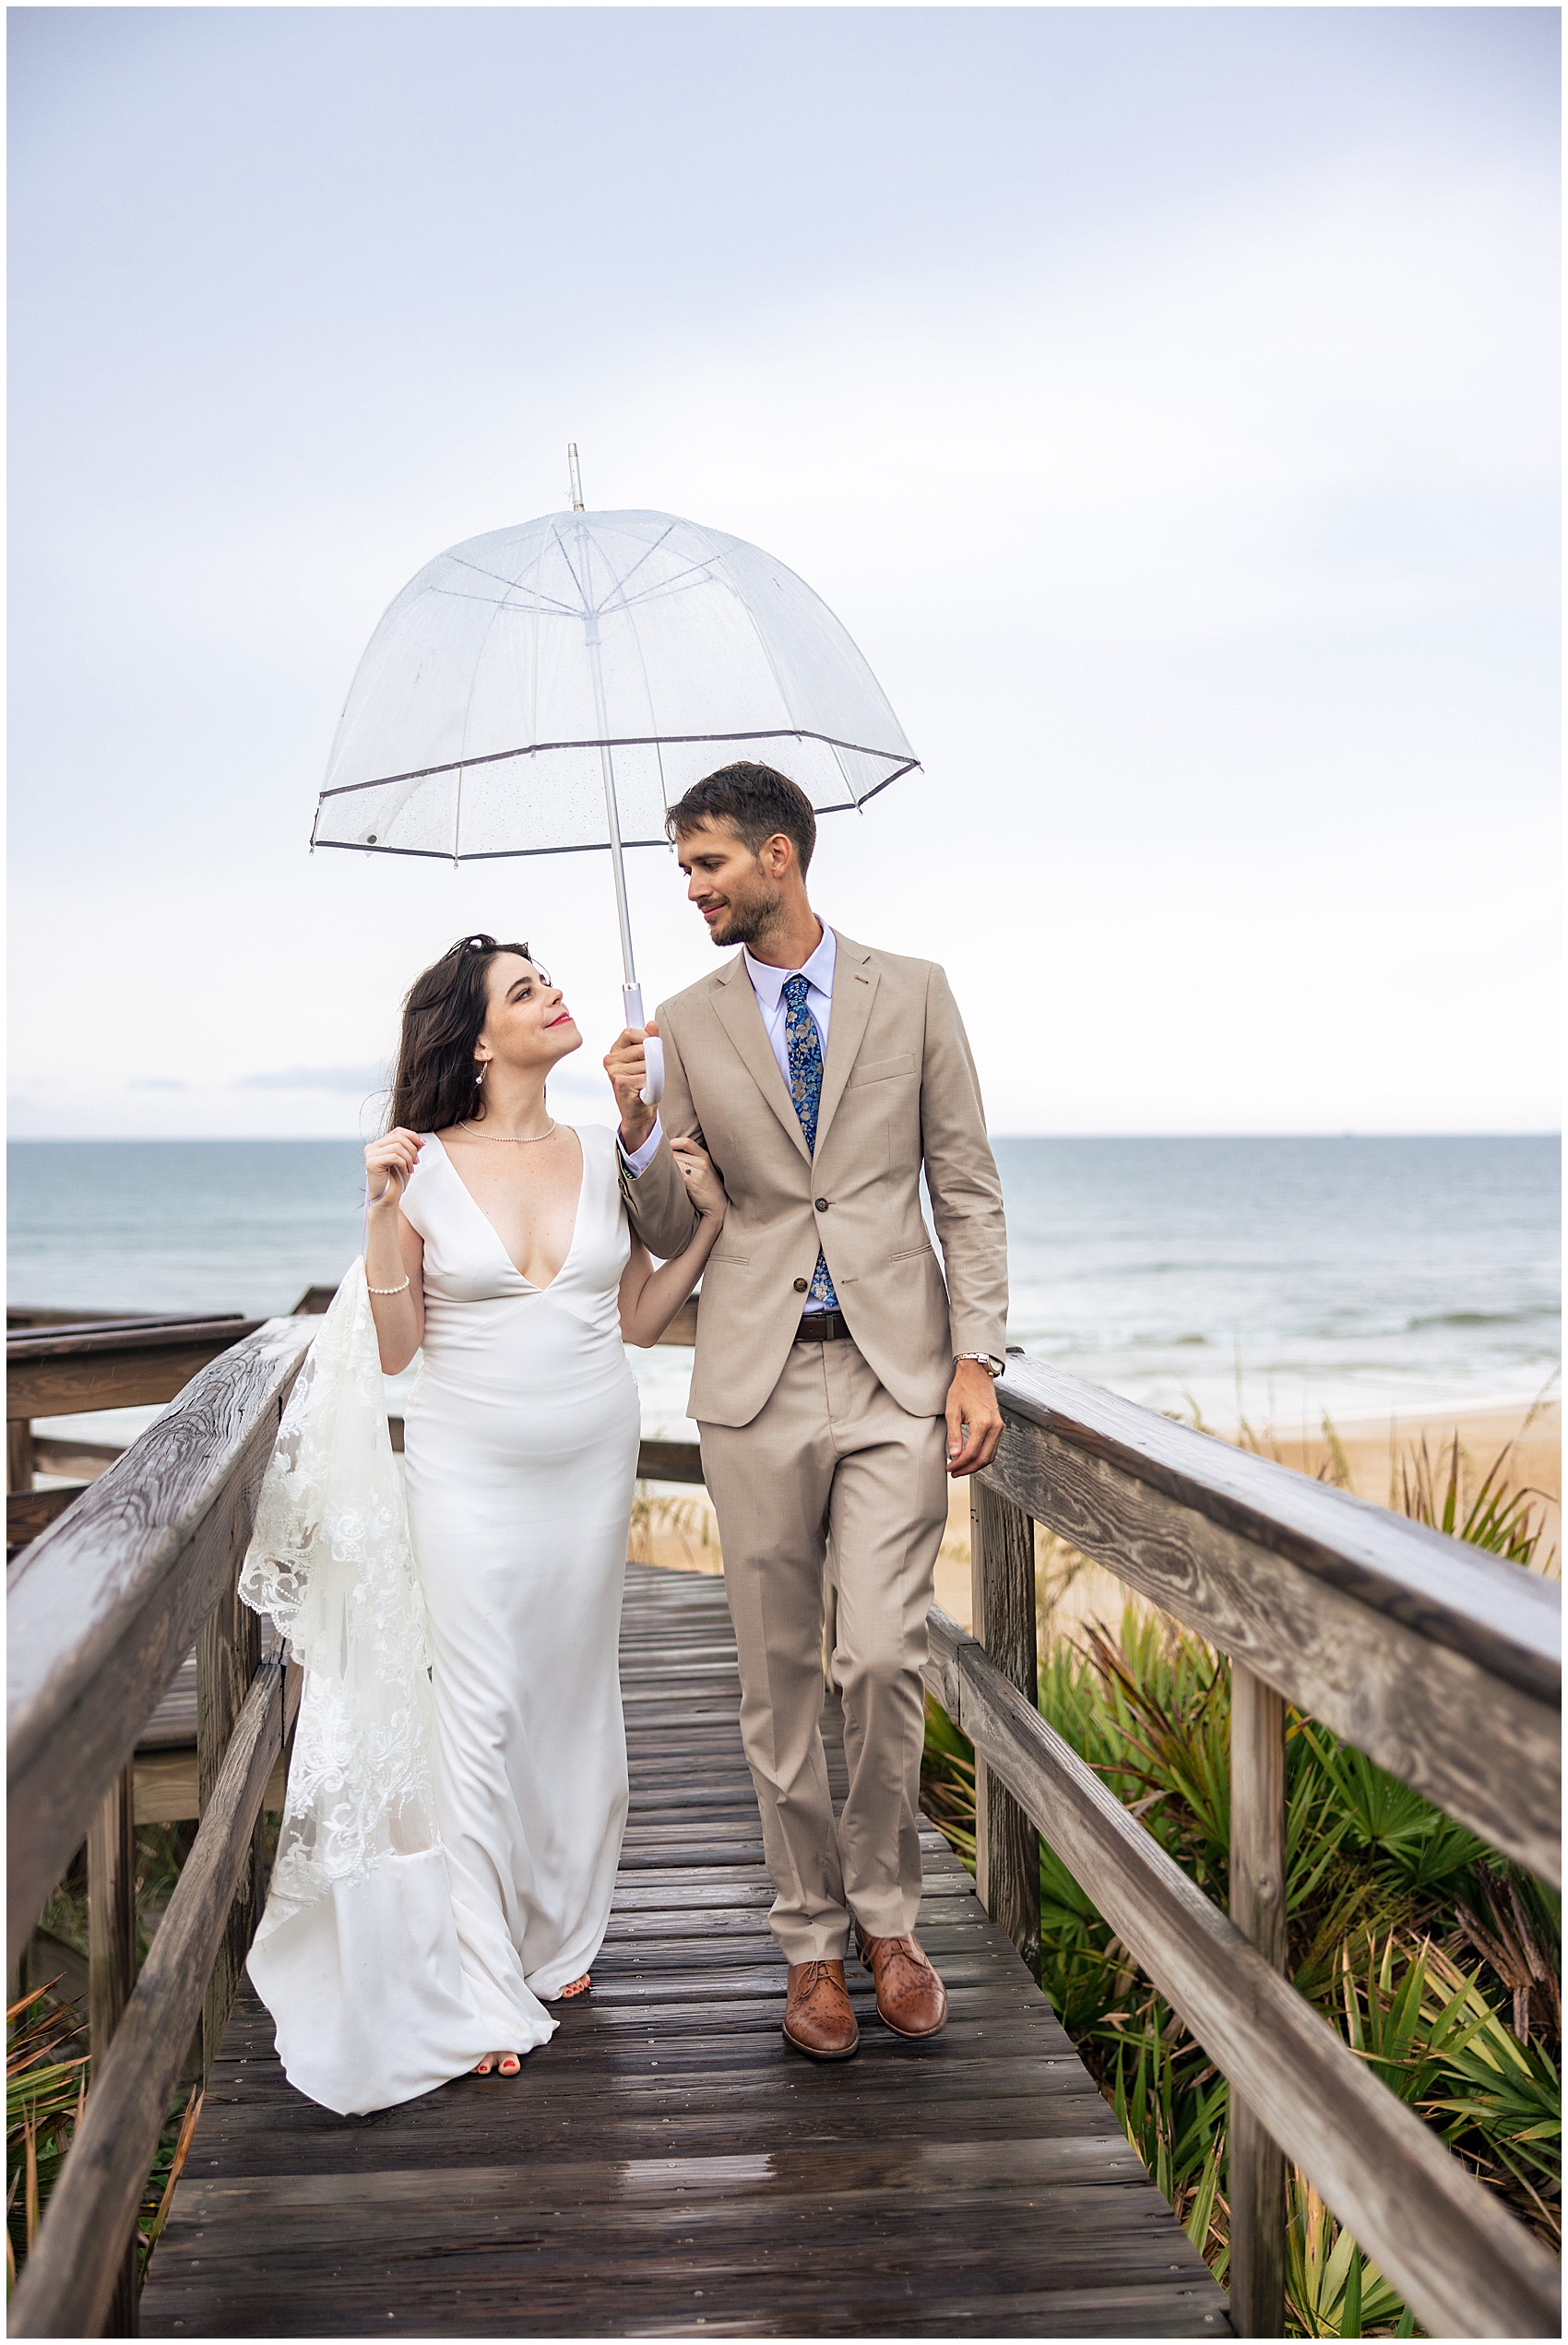 Newlyweds walk under a clear umbrella over a wet beach boardwalk